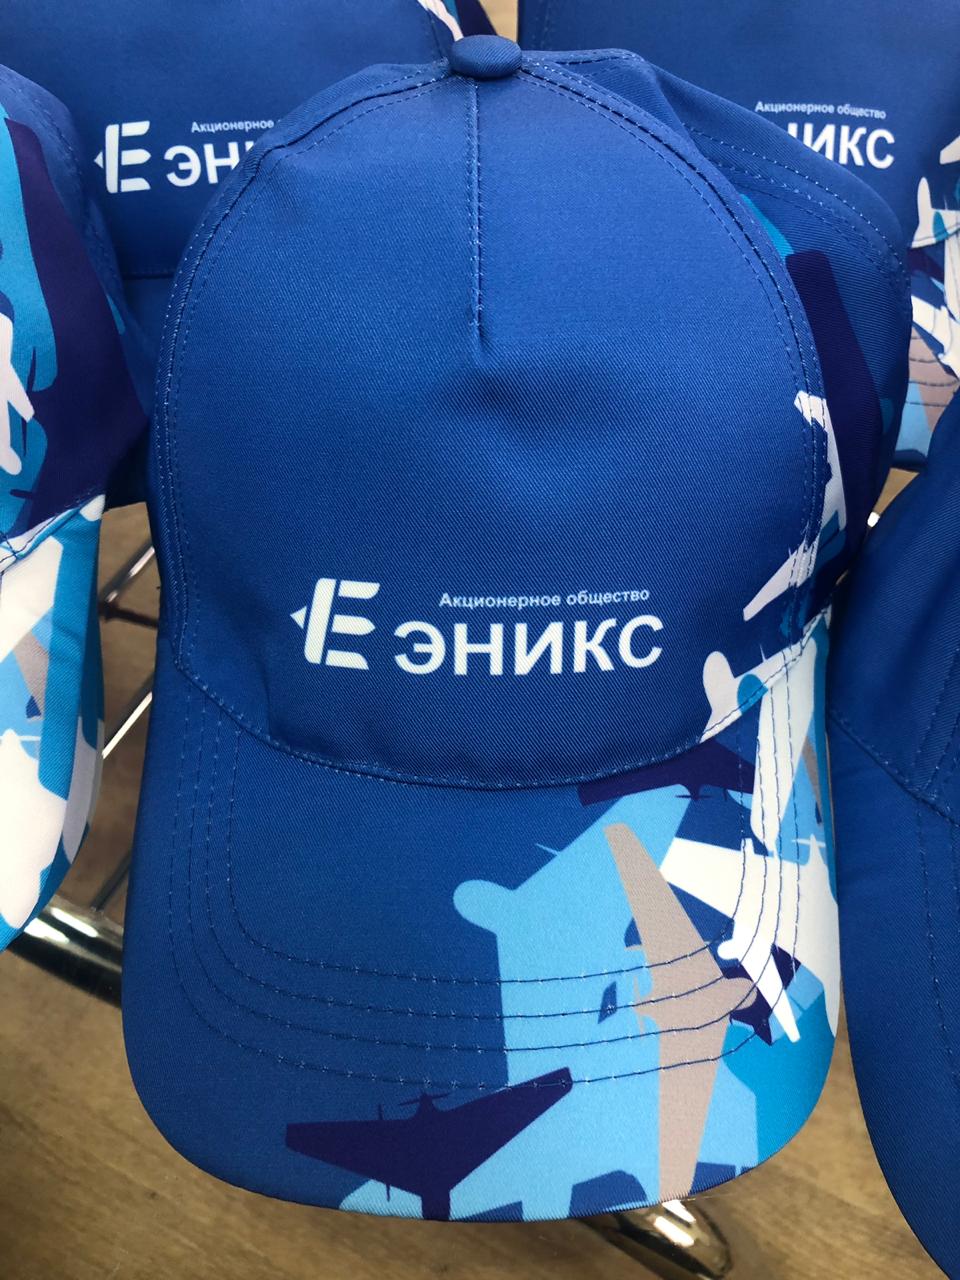 Гефест Проекция РТ осуществила поставку брендированных дождевиков и кепок для АО «Эникс» 